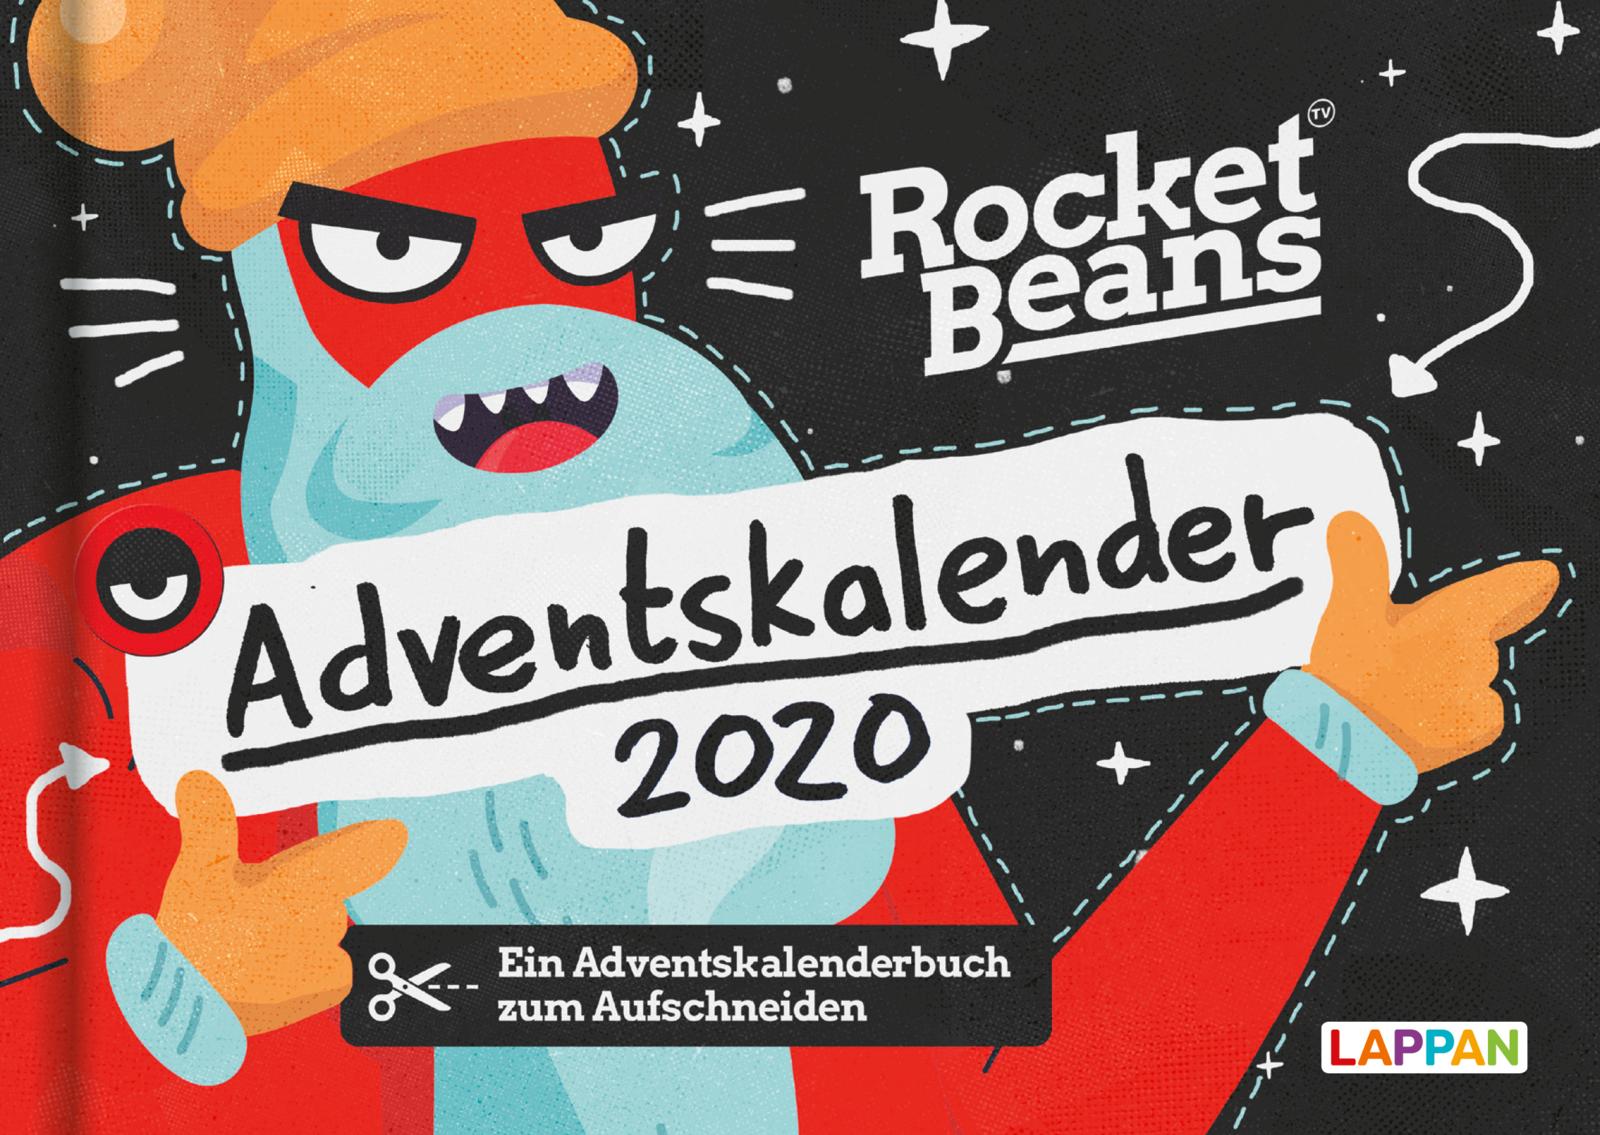 Der Rocket Beans Adventskalender Carlsen